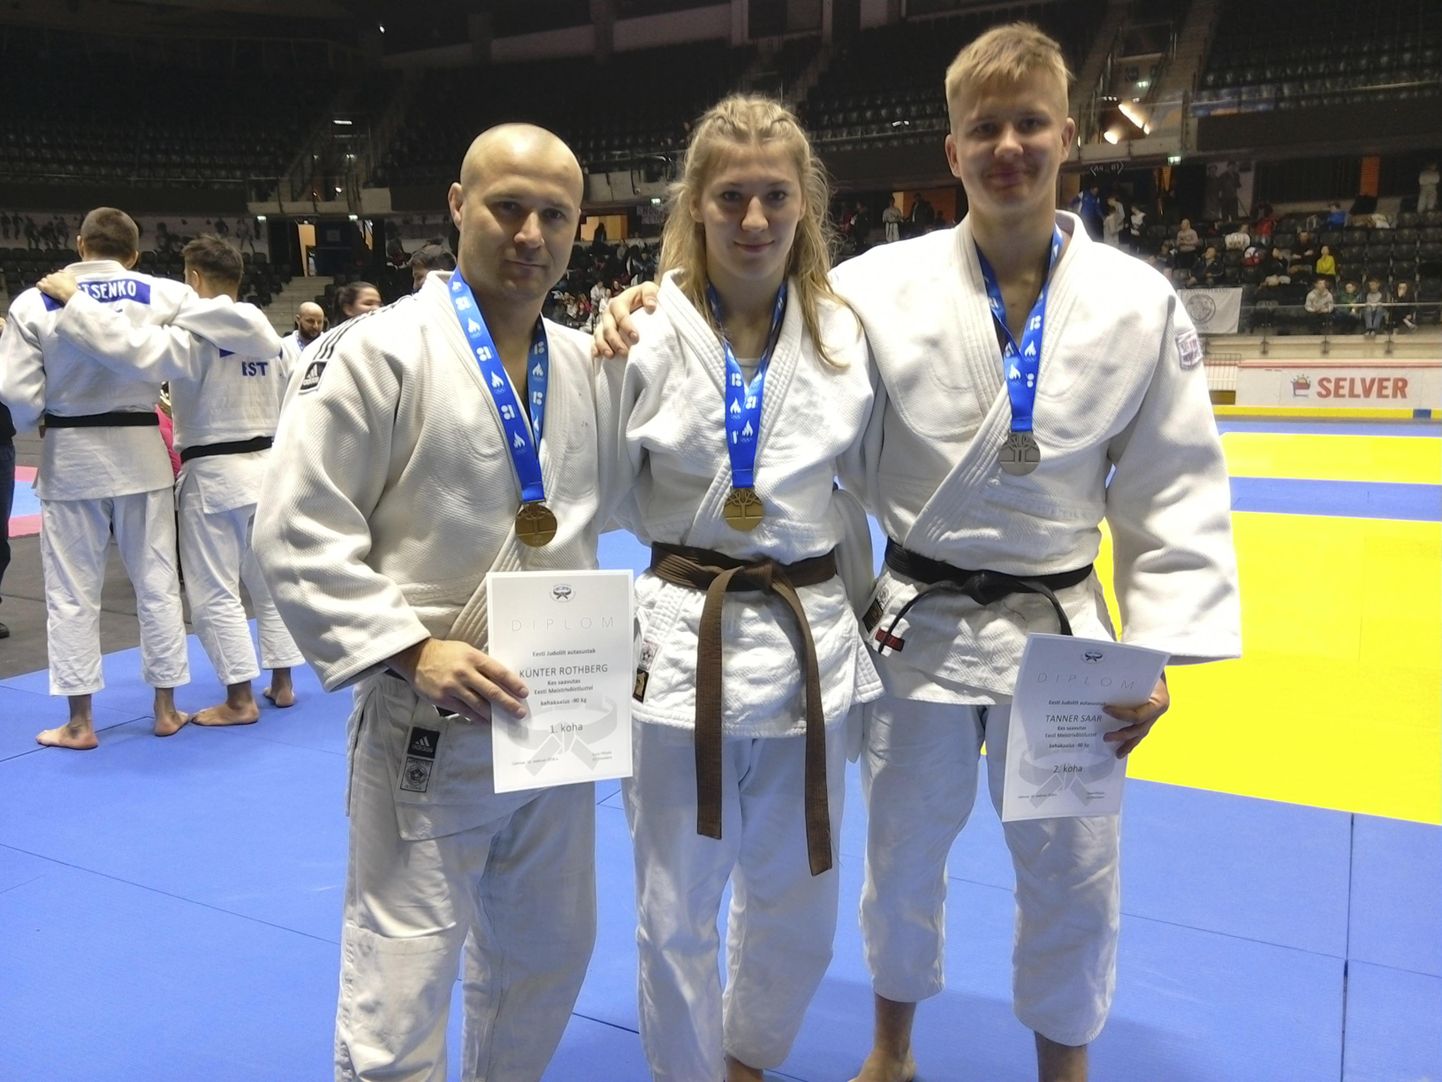 Eesti täiskasvanute meistriks tulnud Künter Rothberg (vasakul) ja Kristel Naelso ning hõbemedali pälvinud Tanner Saar on kõik Viljandist sirgunud judokad.